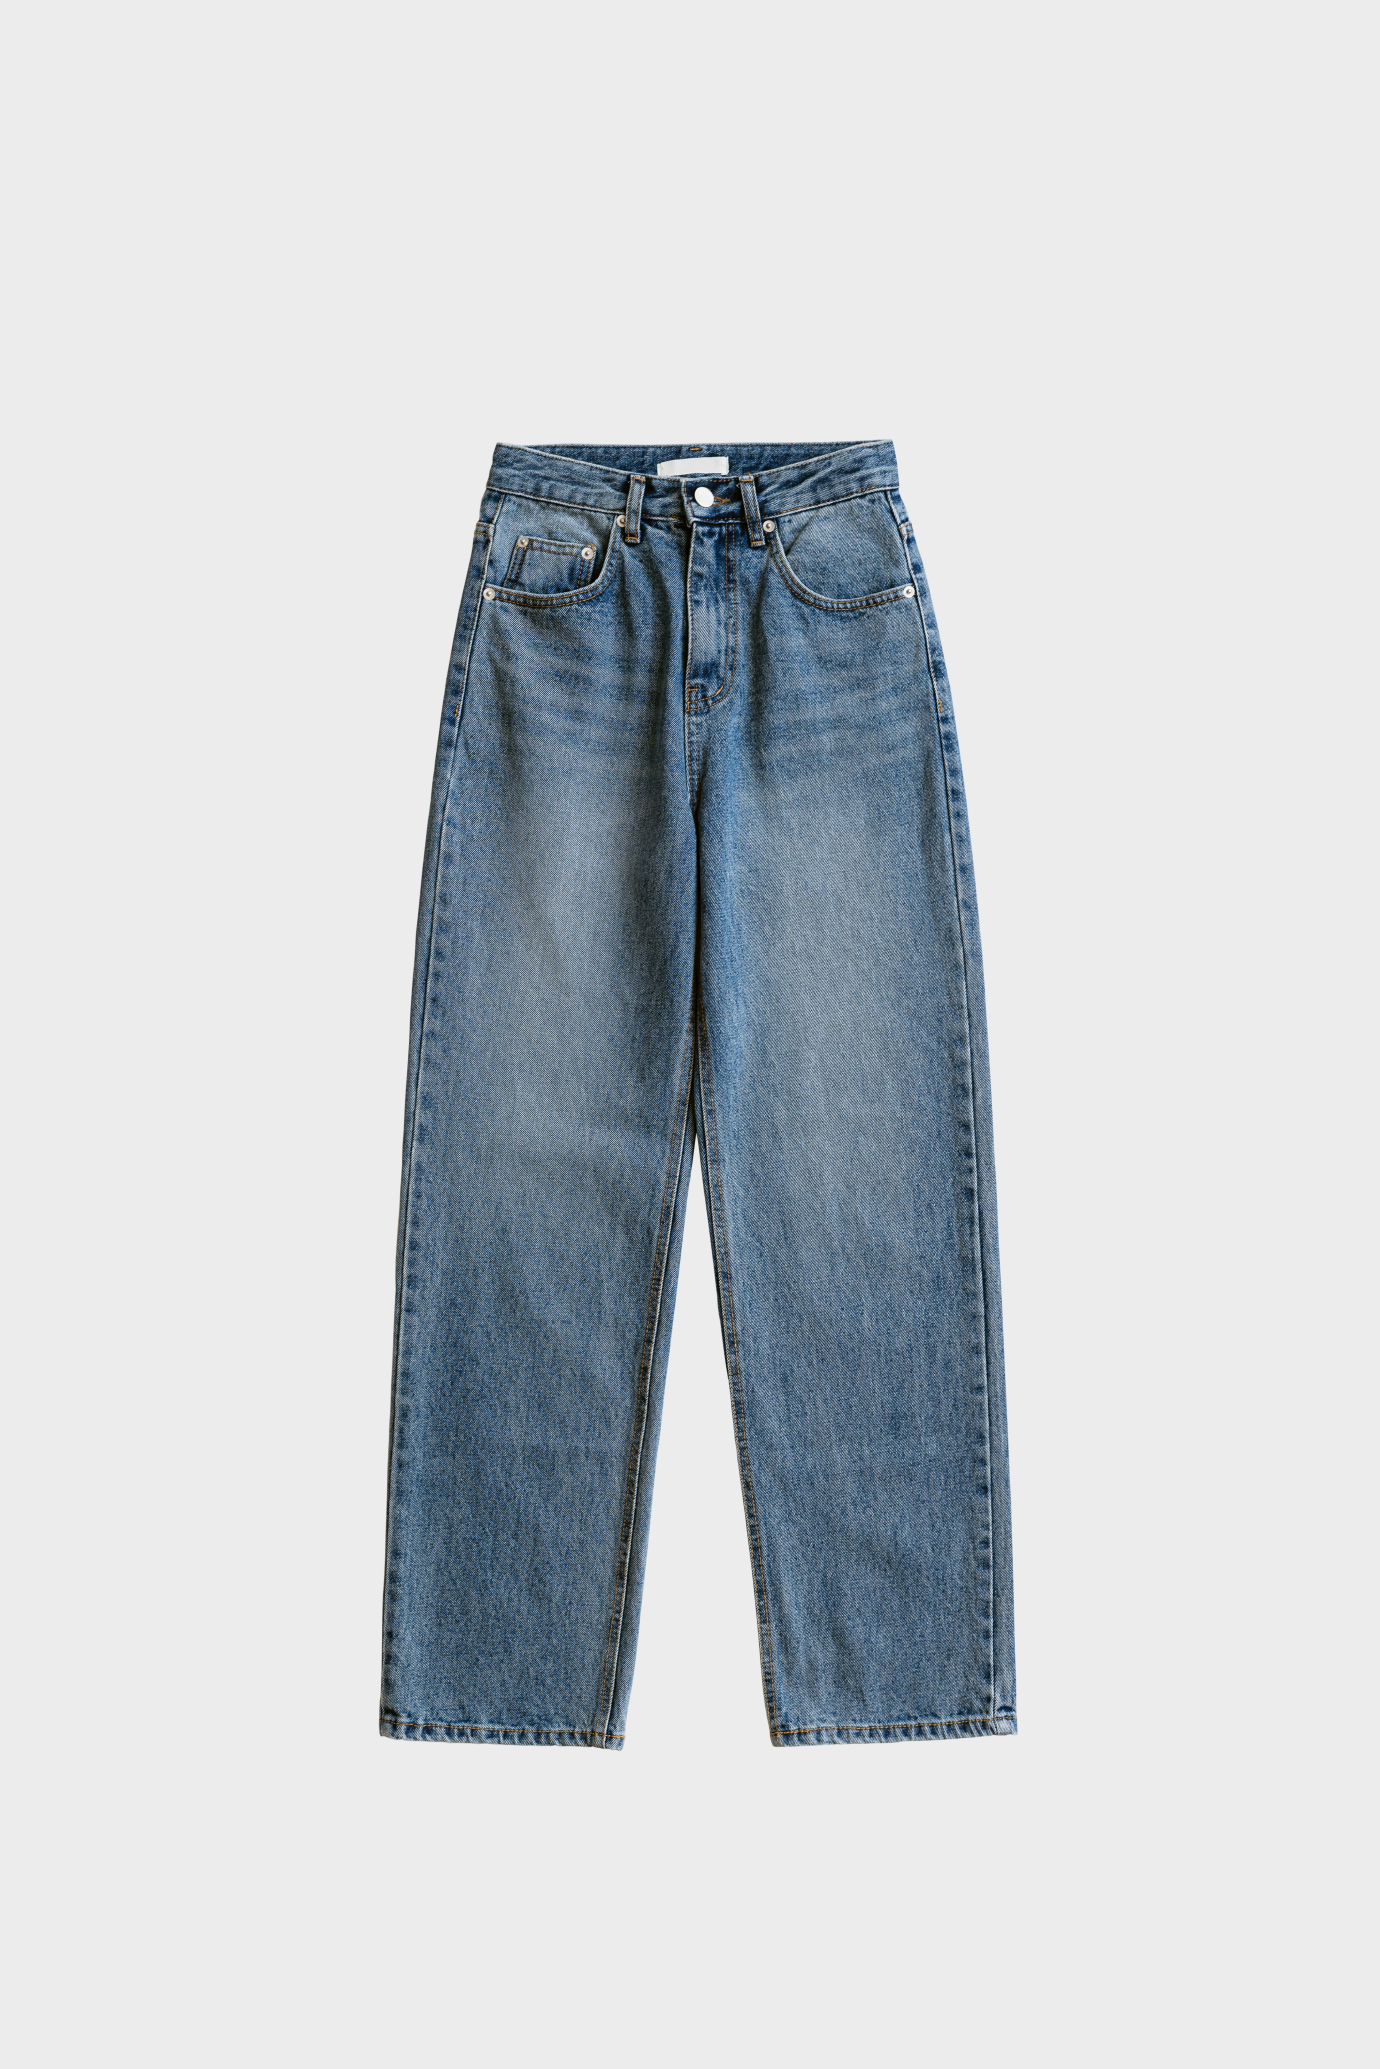 18538_Vintage Five-Pocket Jeans